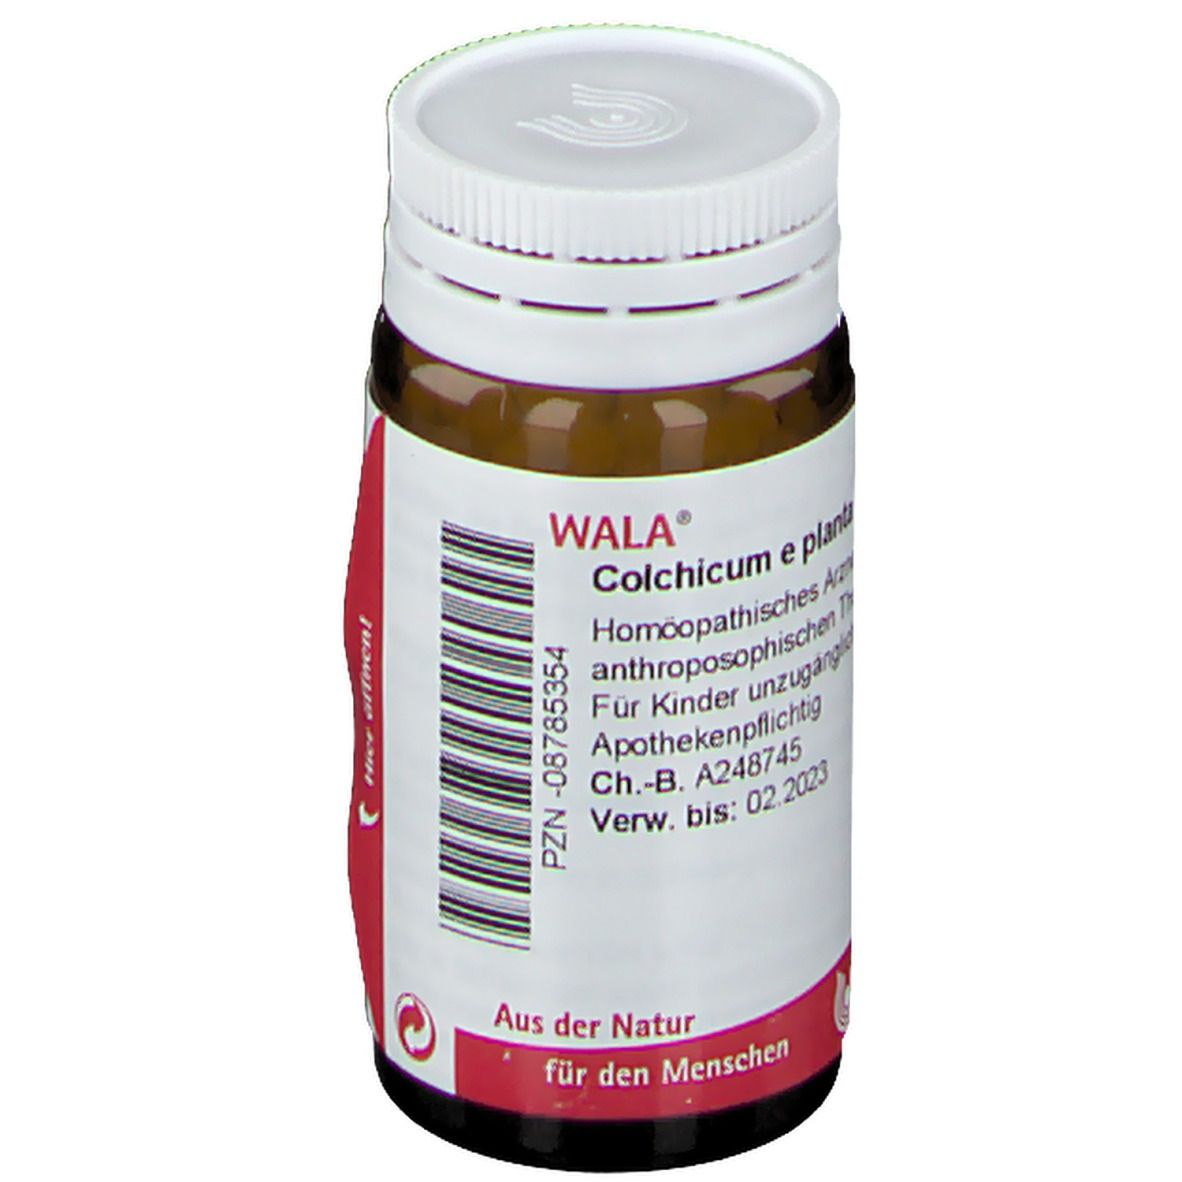 WALA® Colchicum e planta tota D 3